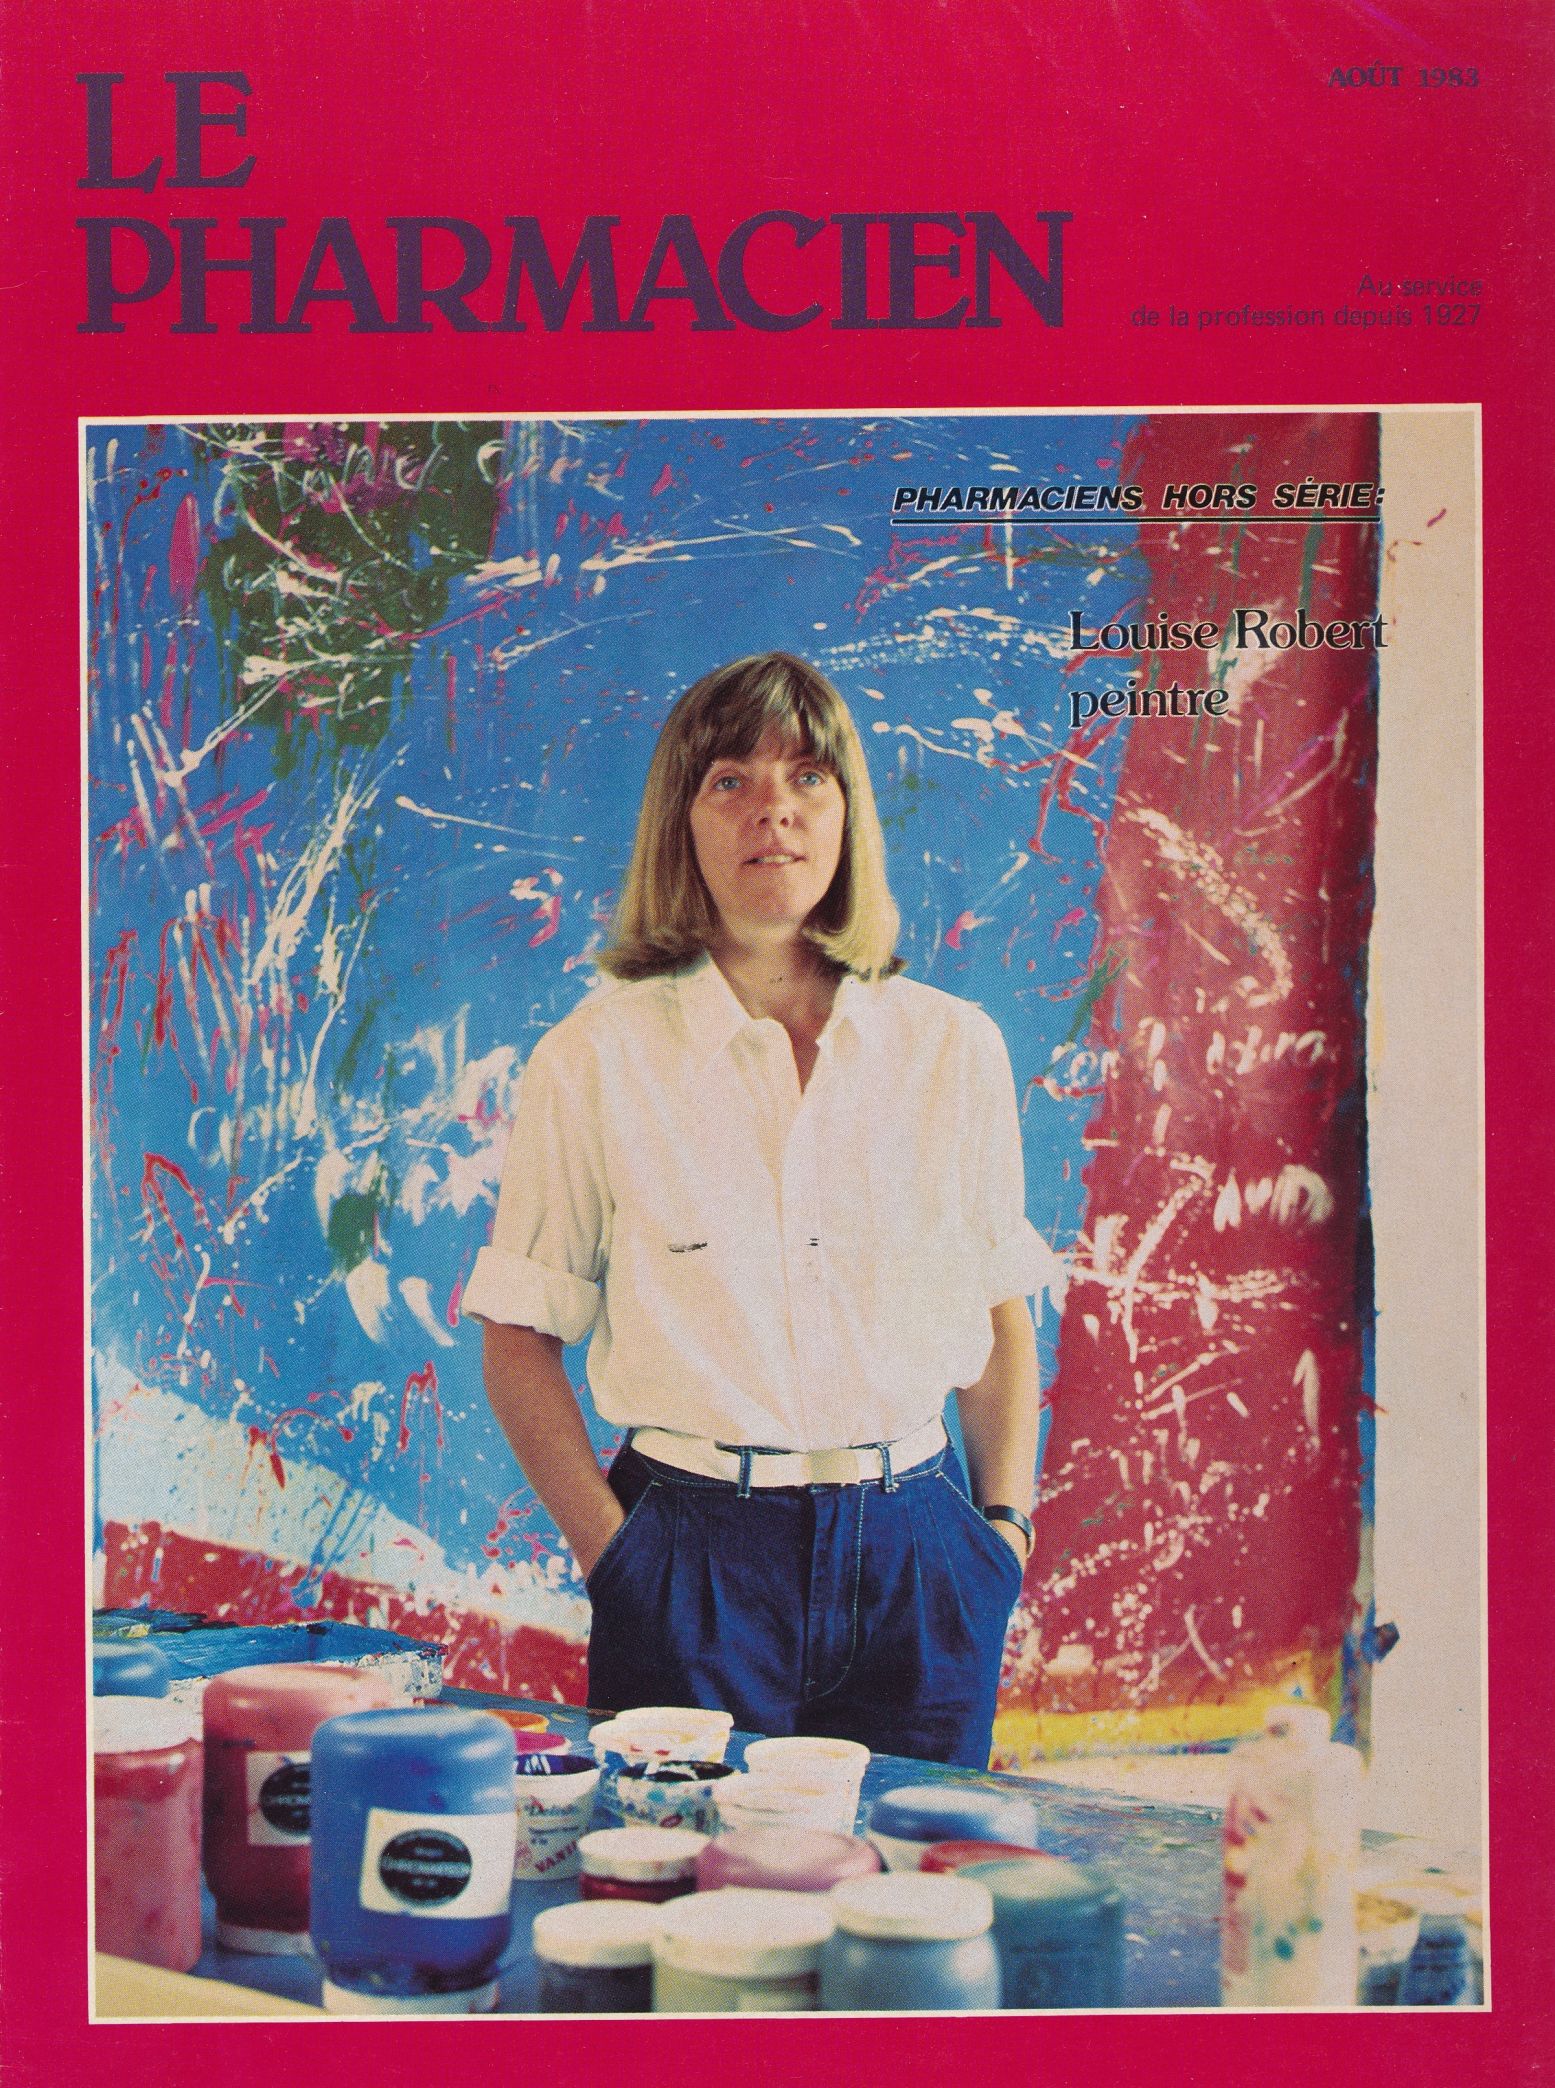 Couverture du périodique Le Pharmacien (Montréal), août 1983. Louise Robert dans son atelier du 4040 boul. Saint-Laurent, Montréal.